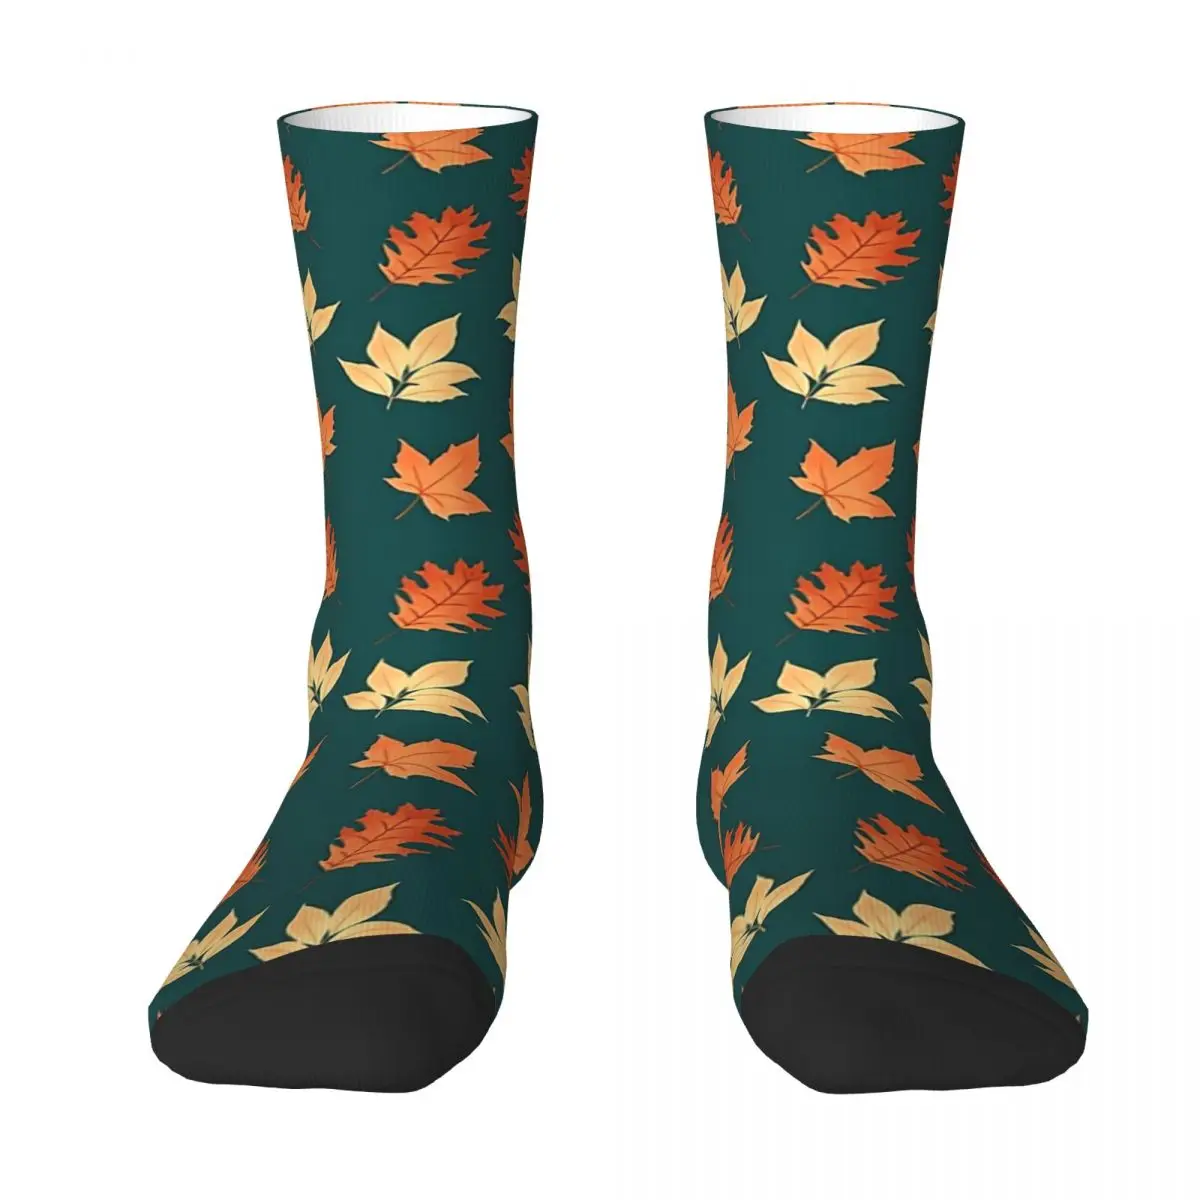 Autumn Leaves Pattern Adult Socks,Unisex socks,men Socks women Socks